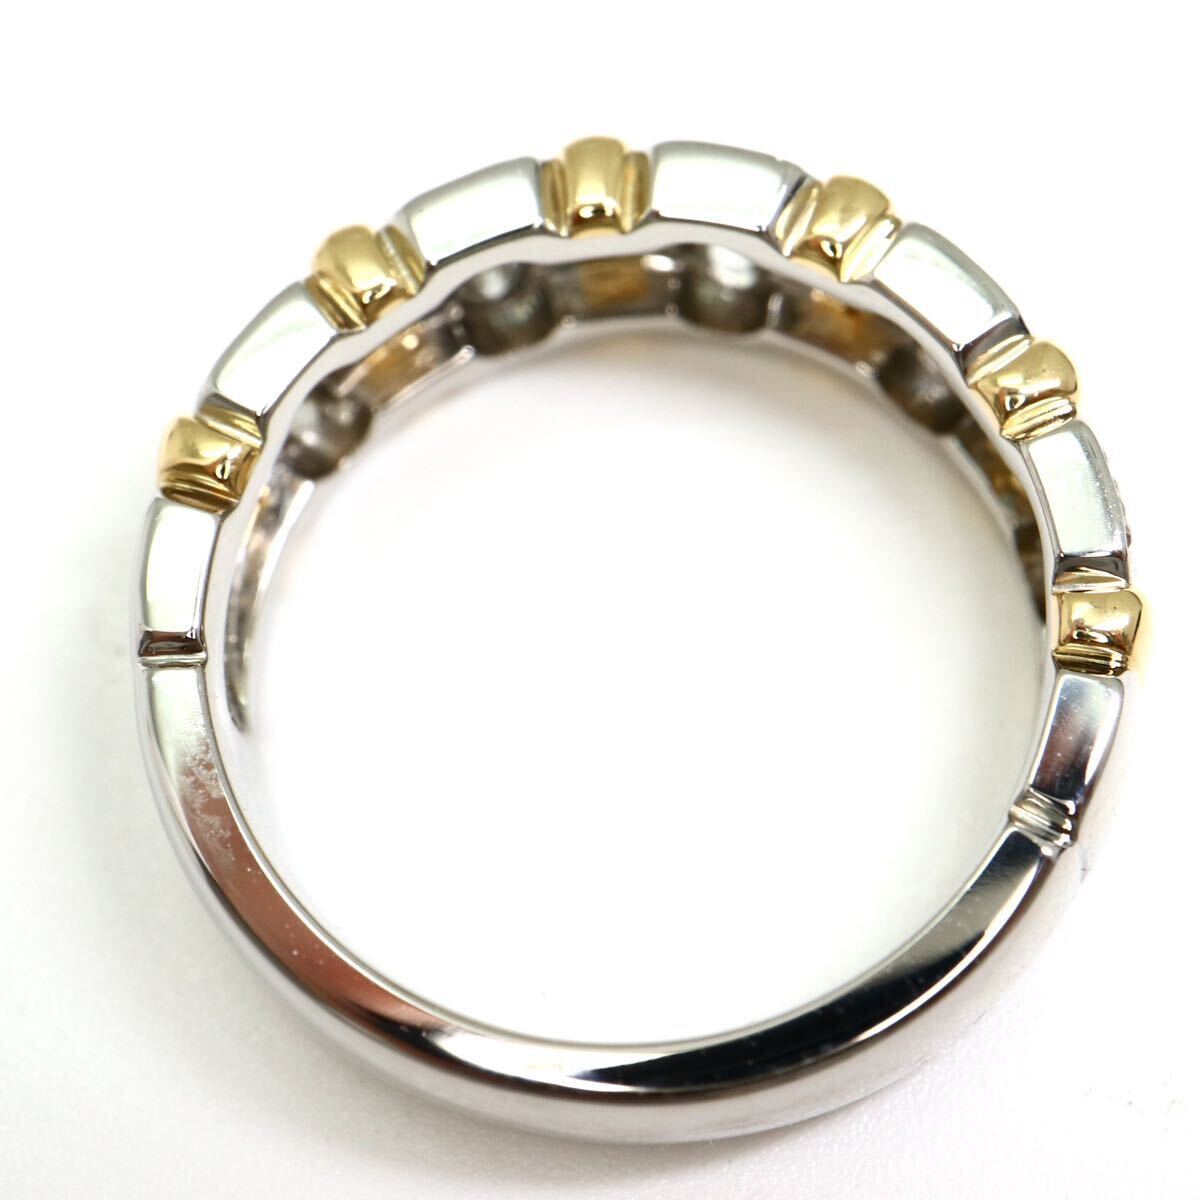 Ambrose(アンブローズ)《K18/Pt900 天然ダイヤモンドリング》M 約6.9g 約7号 0.31ct diamond ring jewelry 指輪 ジュエリー ED0/ED5_画像6